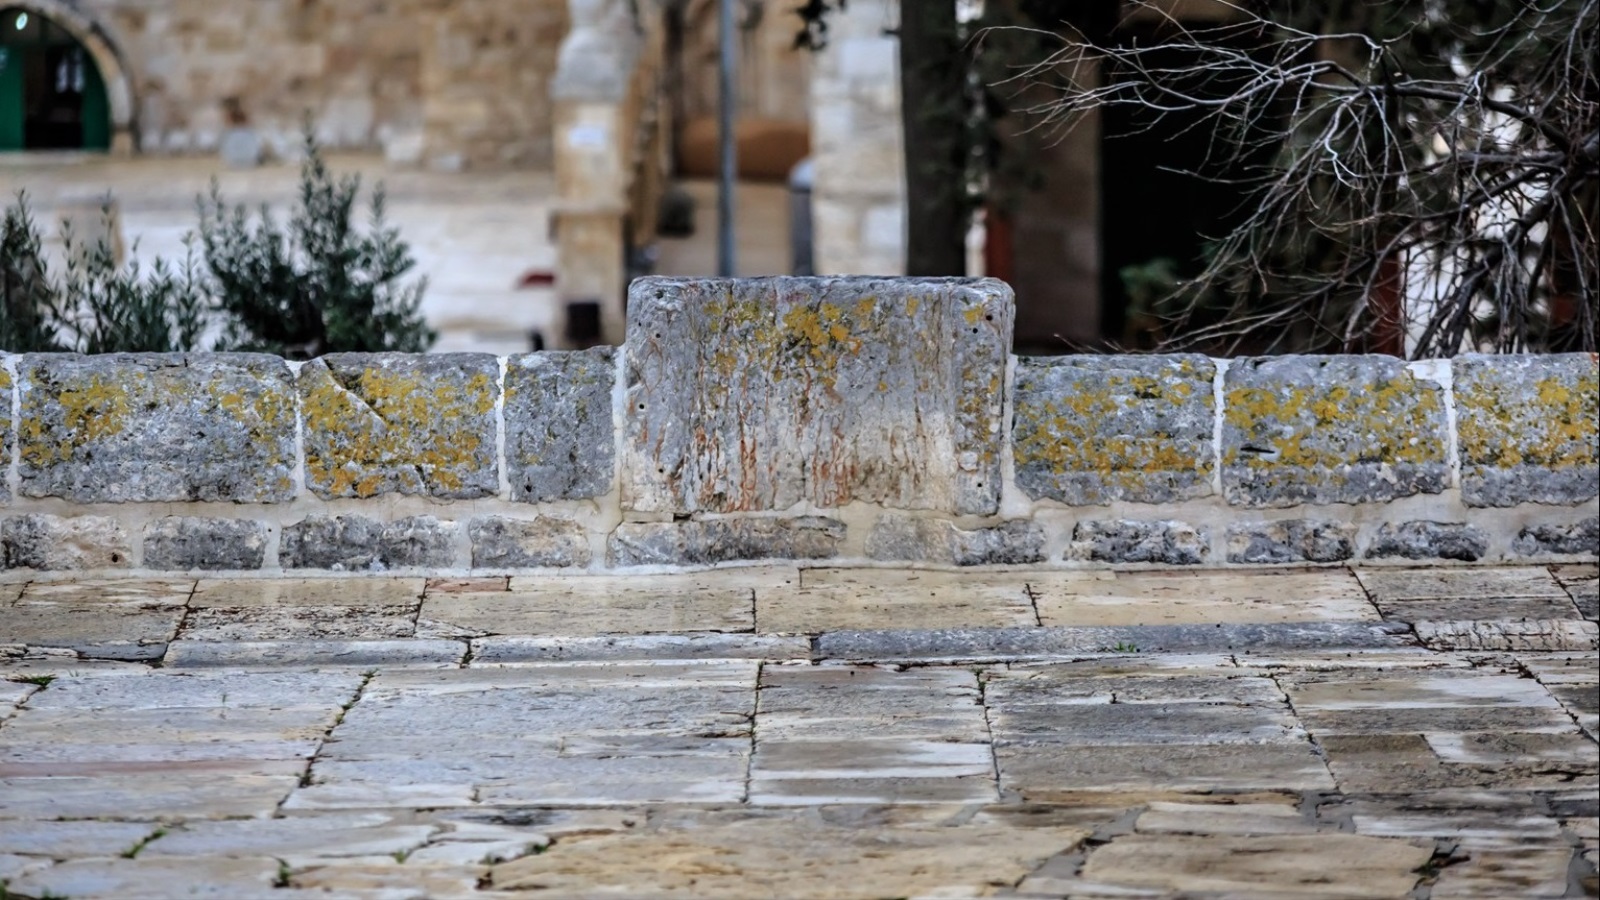 5675  - محراب صحن الصخرة، يقع على محيط صحن الصخرة الجنوبي بين البائكتين الجنوبيتيين، وهو حجر منحوت كشكل محراب منخفض القامة، يرجح أنه عثماني العهد.